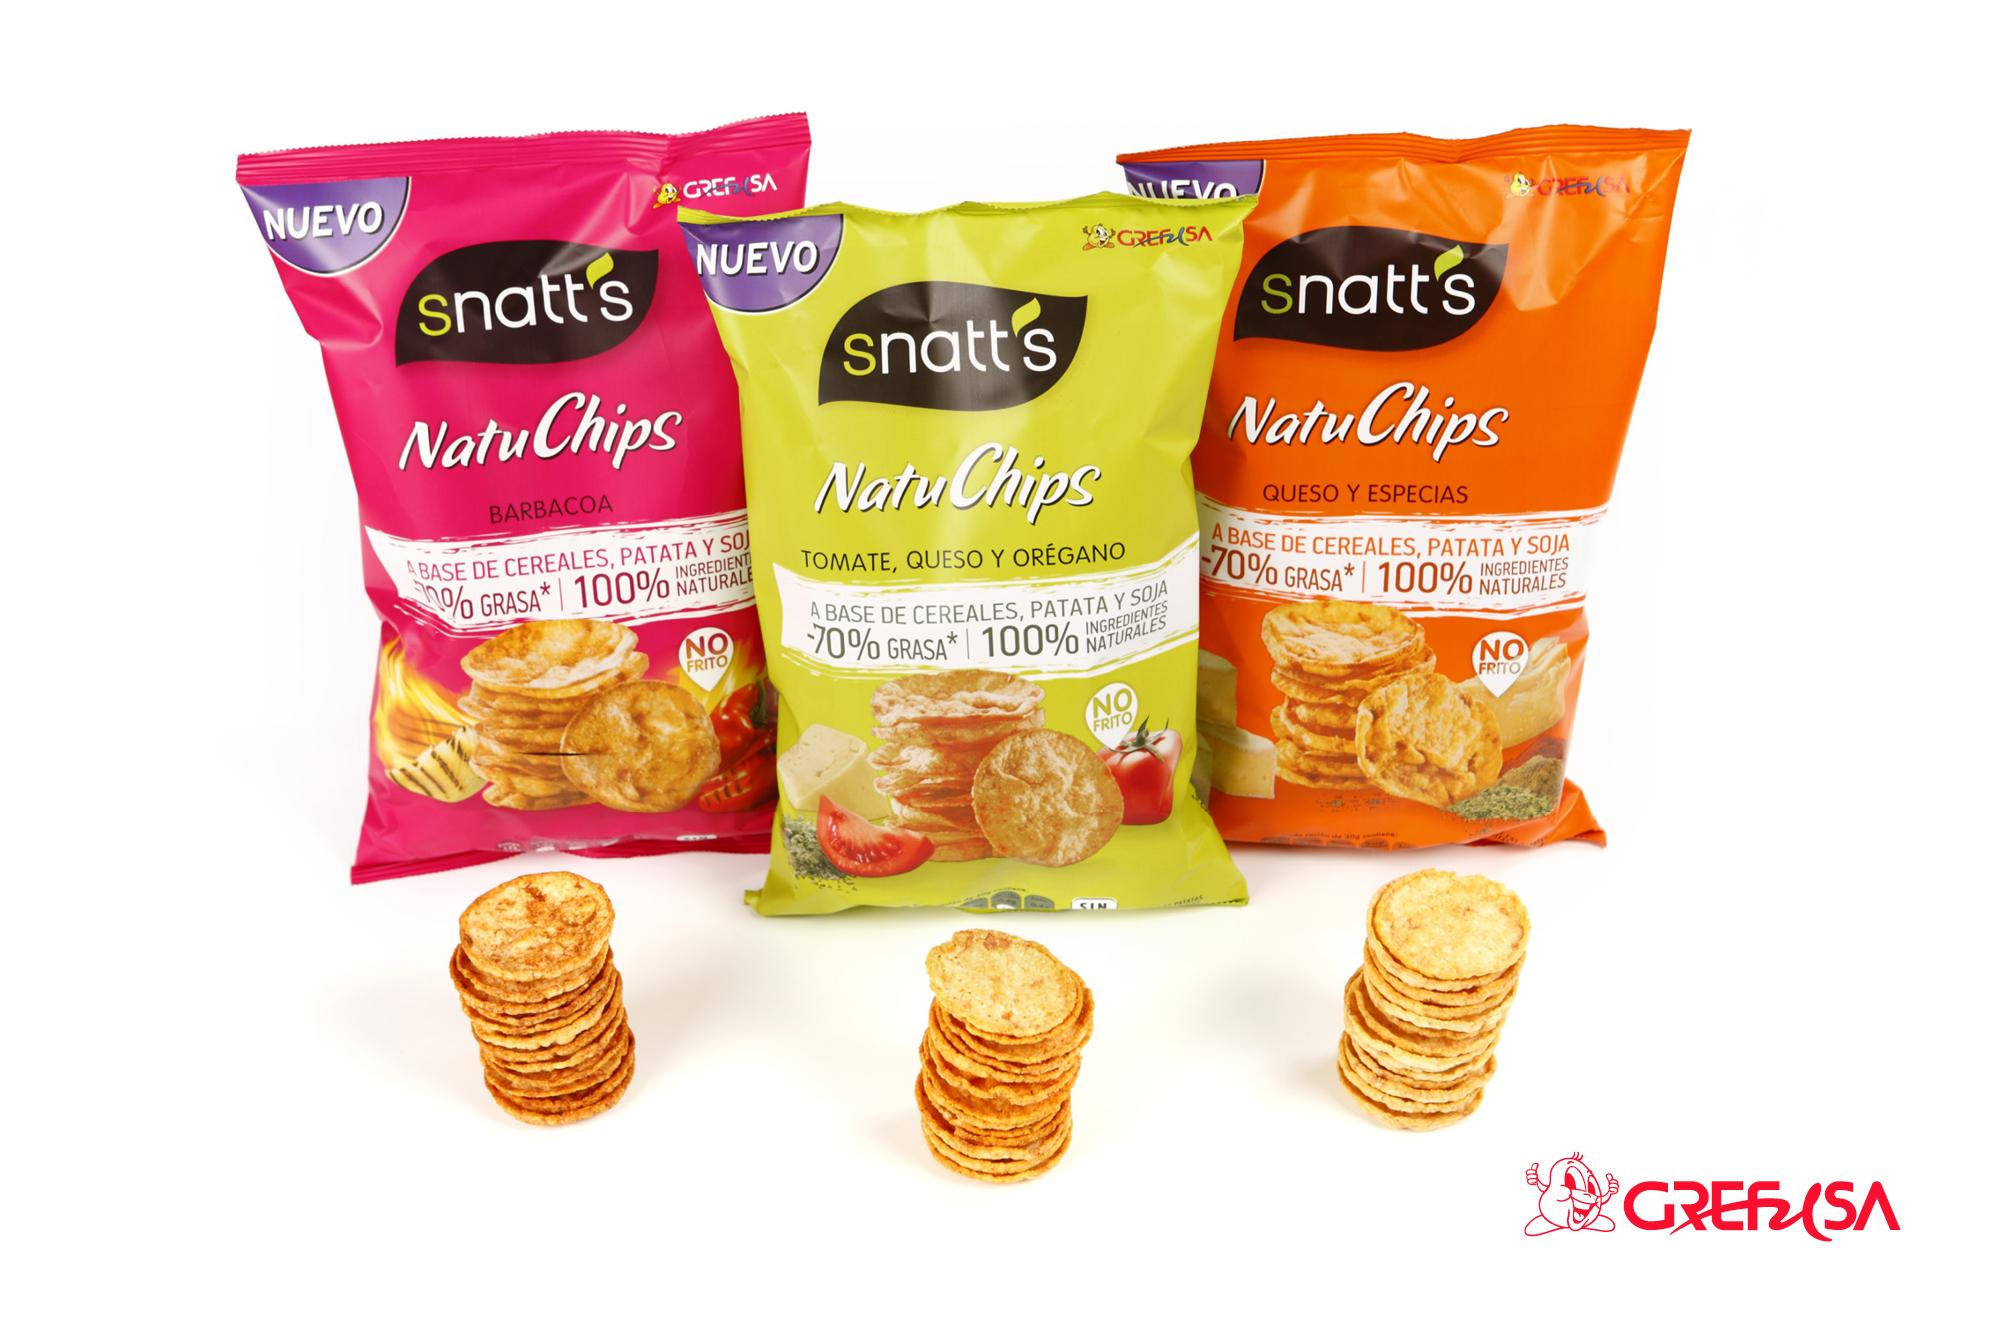 Snatt's Natuchips Grefusa, una alternativa real y saludable a las clásicas patatas fritas